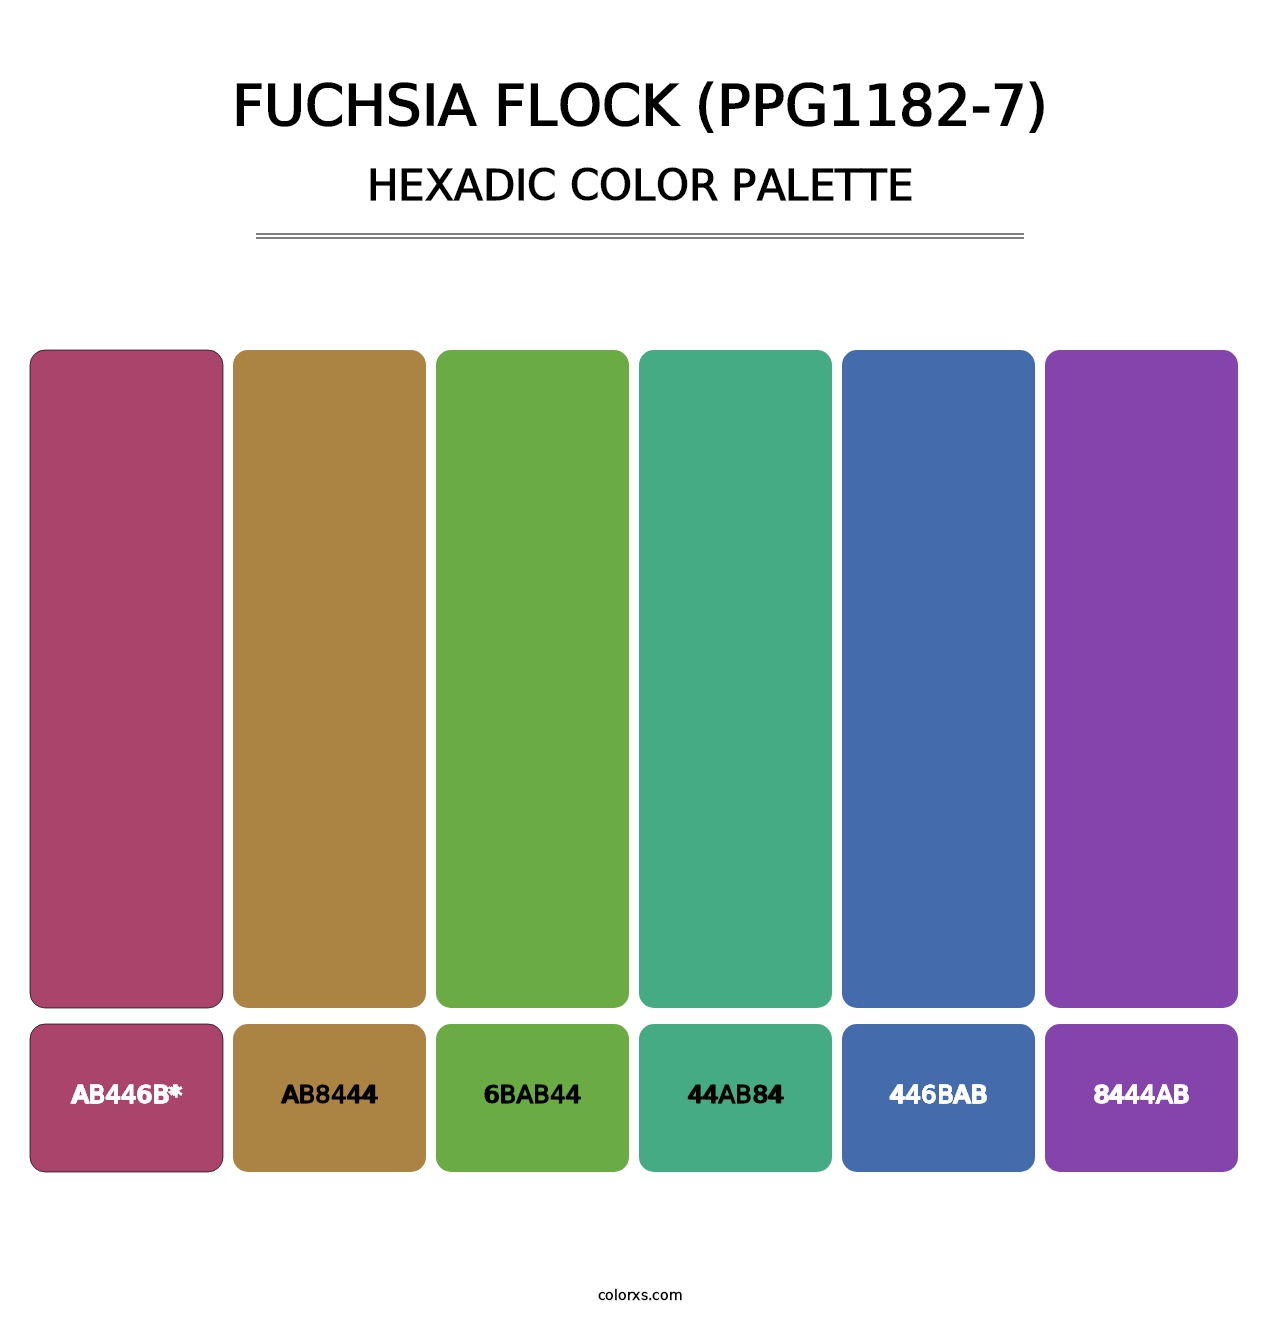 Fuchsia Flock (PPG1182-7) - Hexadic Color Palette